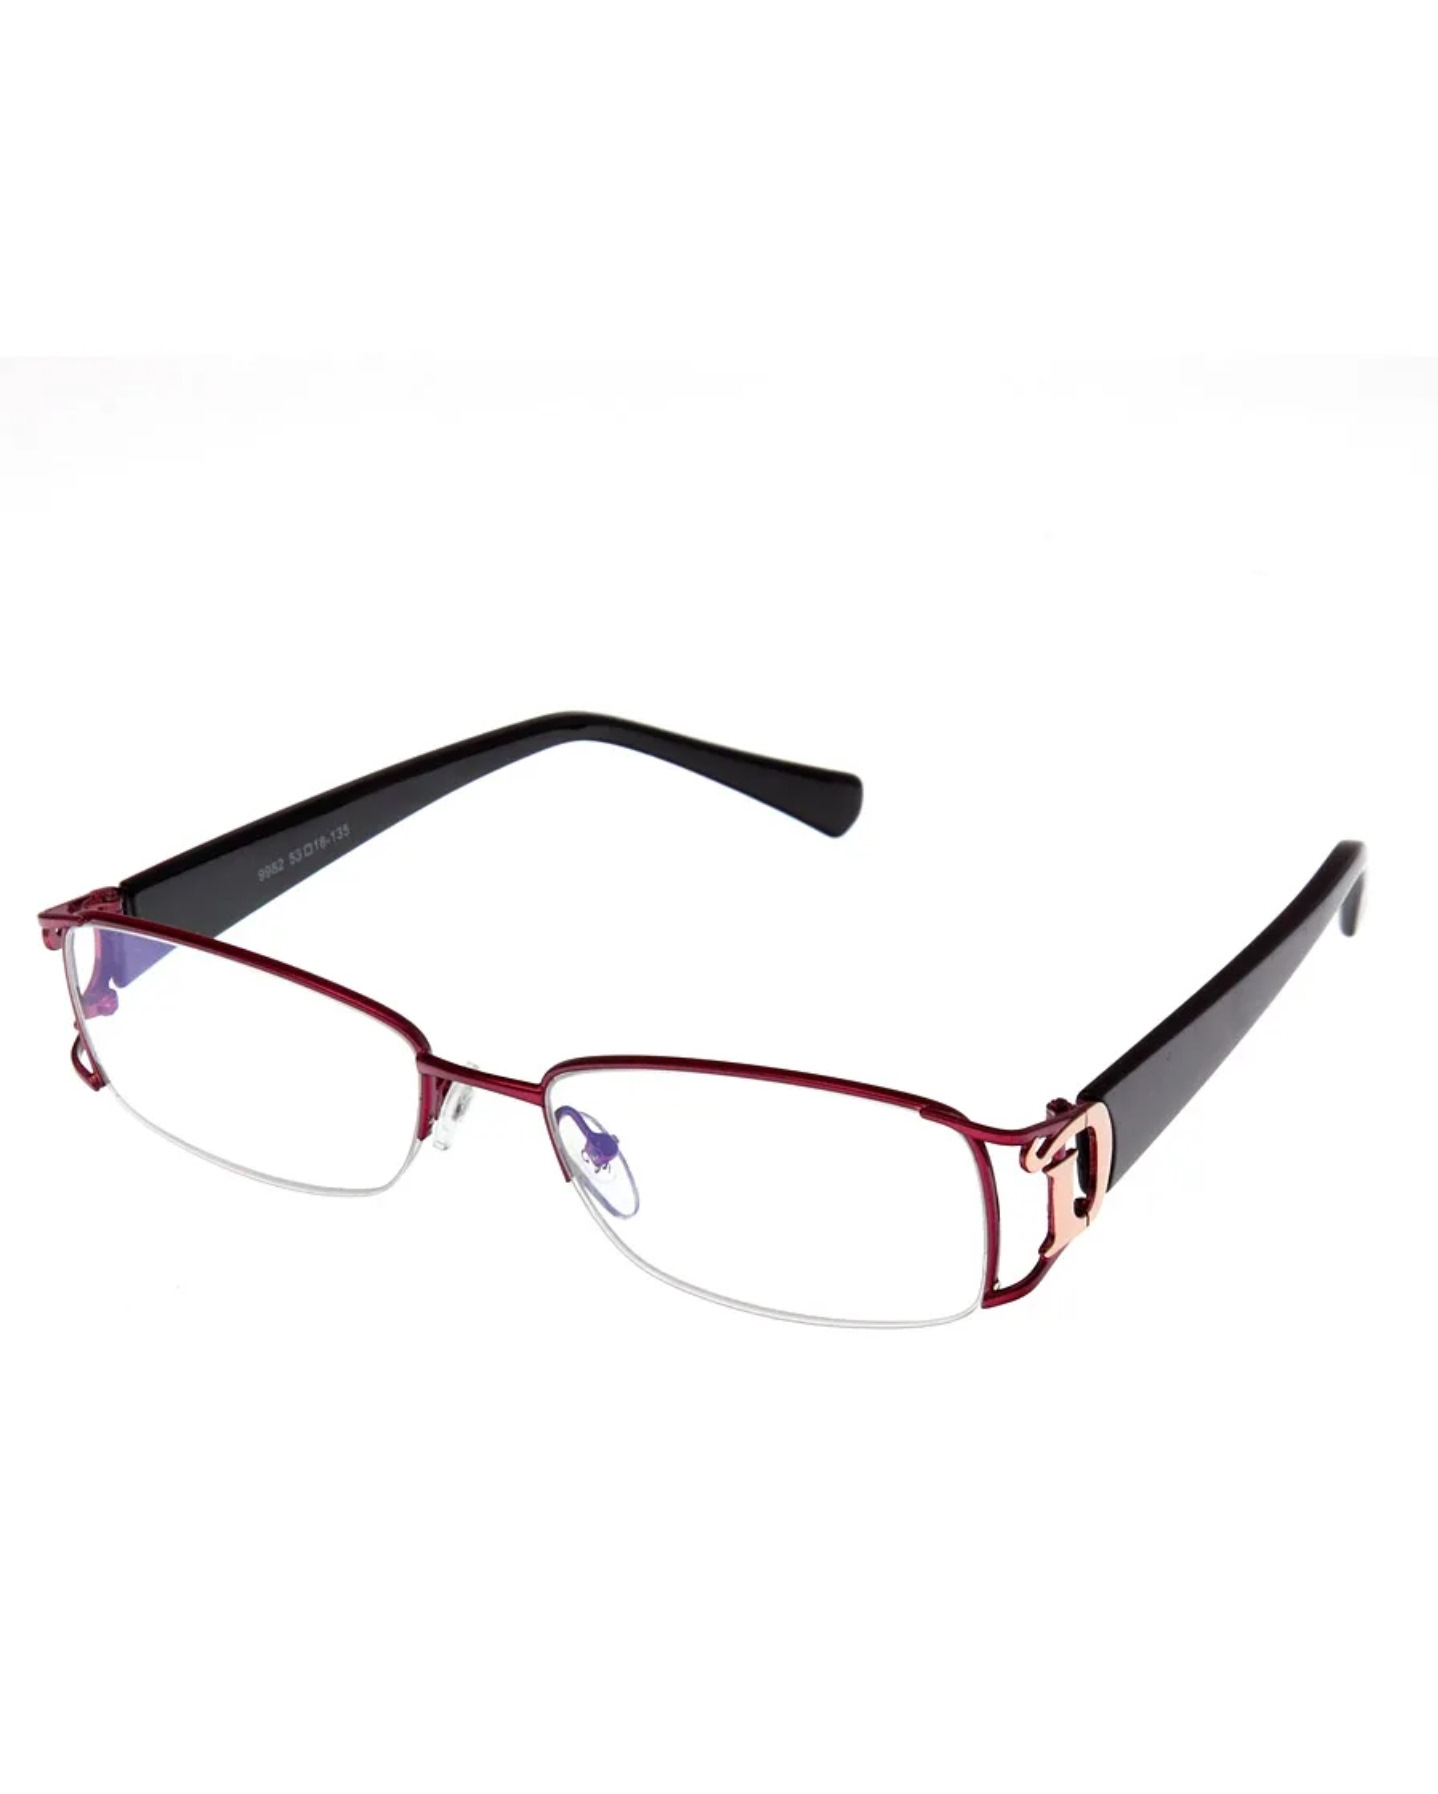 Готовые недорогие очки купить. Узкие очки для зрения. Оправа для очков. Красивые оправы для очков. Очки для чтения.